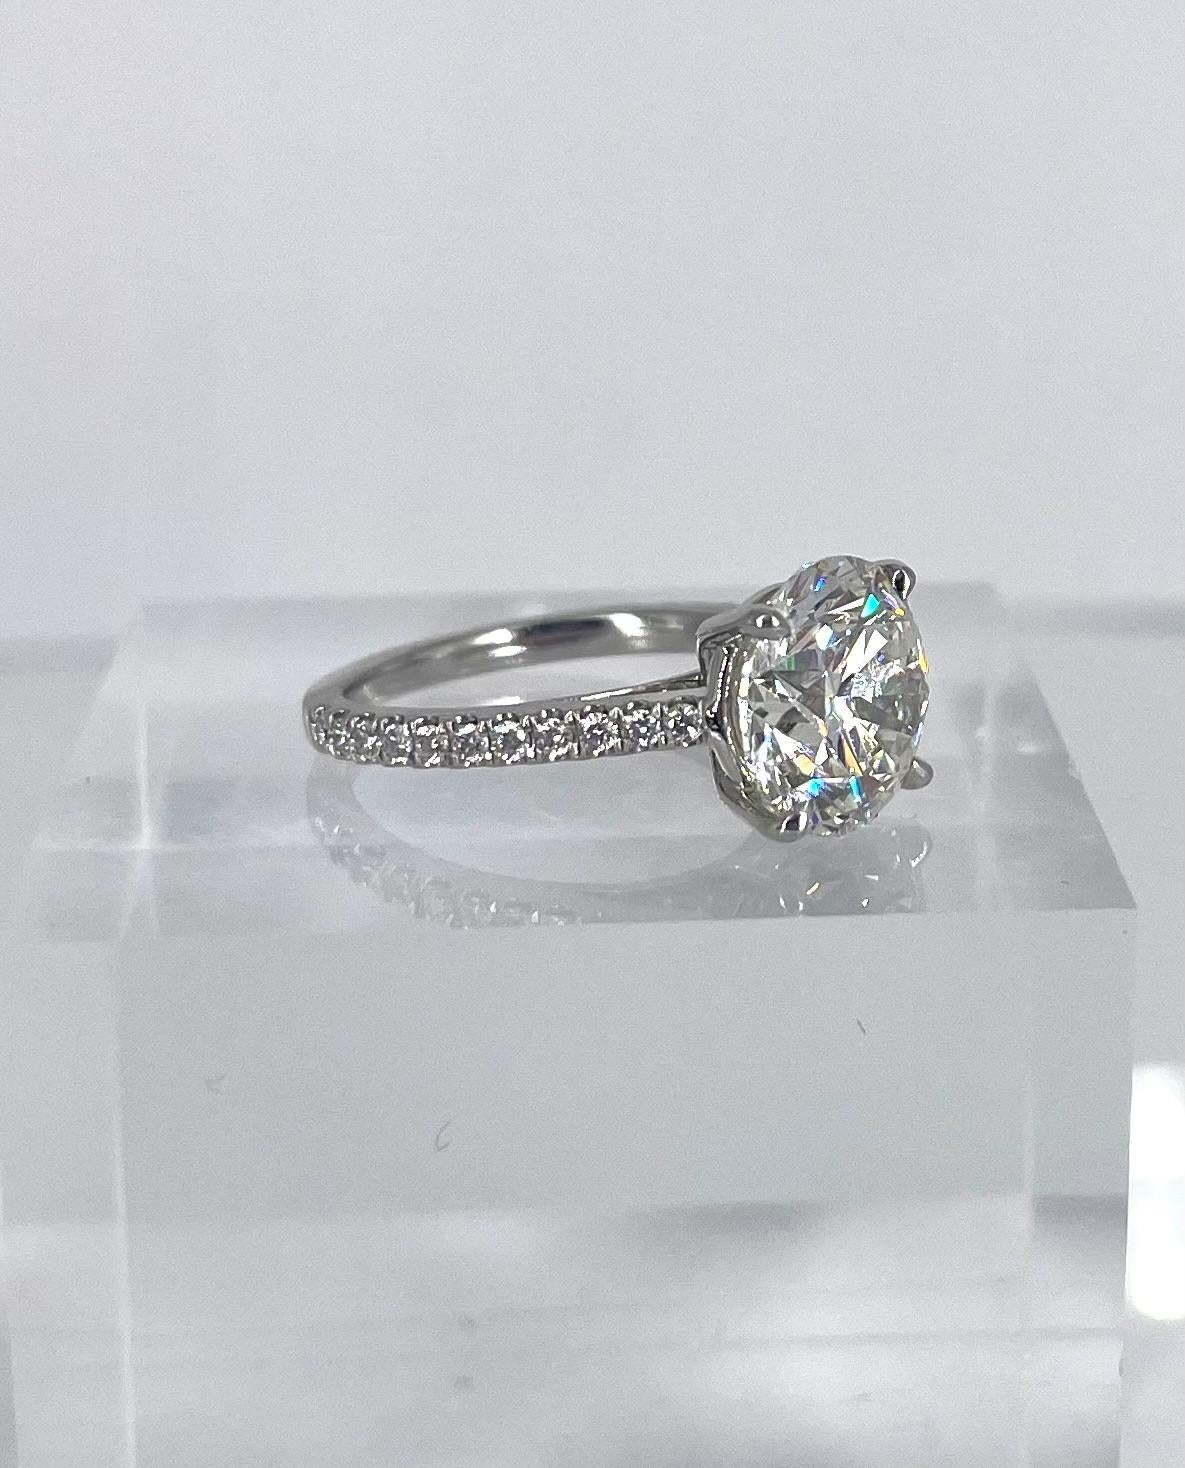 Für jemanden, der auffallenden Glanz braucht! Dieser wunderschöne runde Diamant von 4,50 Karat ist brillant und strahlend. Es ist GIA zertifiziert als G Farbe und VS1 Klarheit. Die gepflasterten Diamanten funkeln entlang des Platinbandes und haben